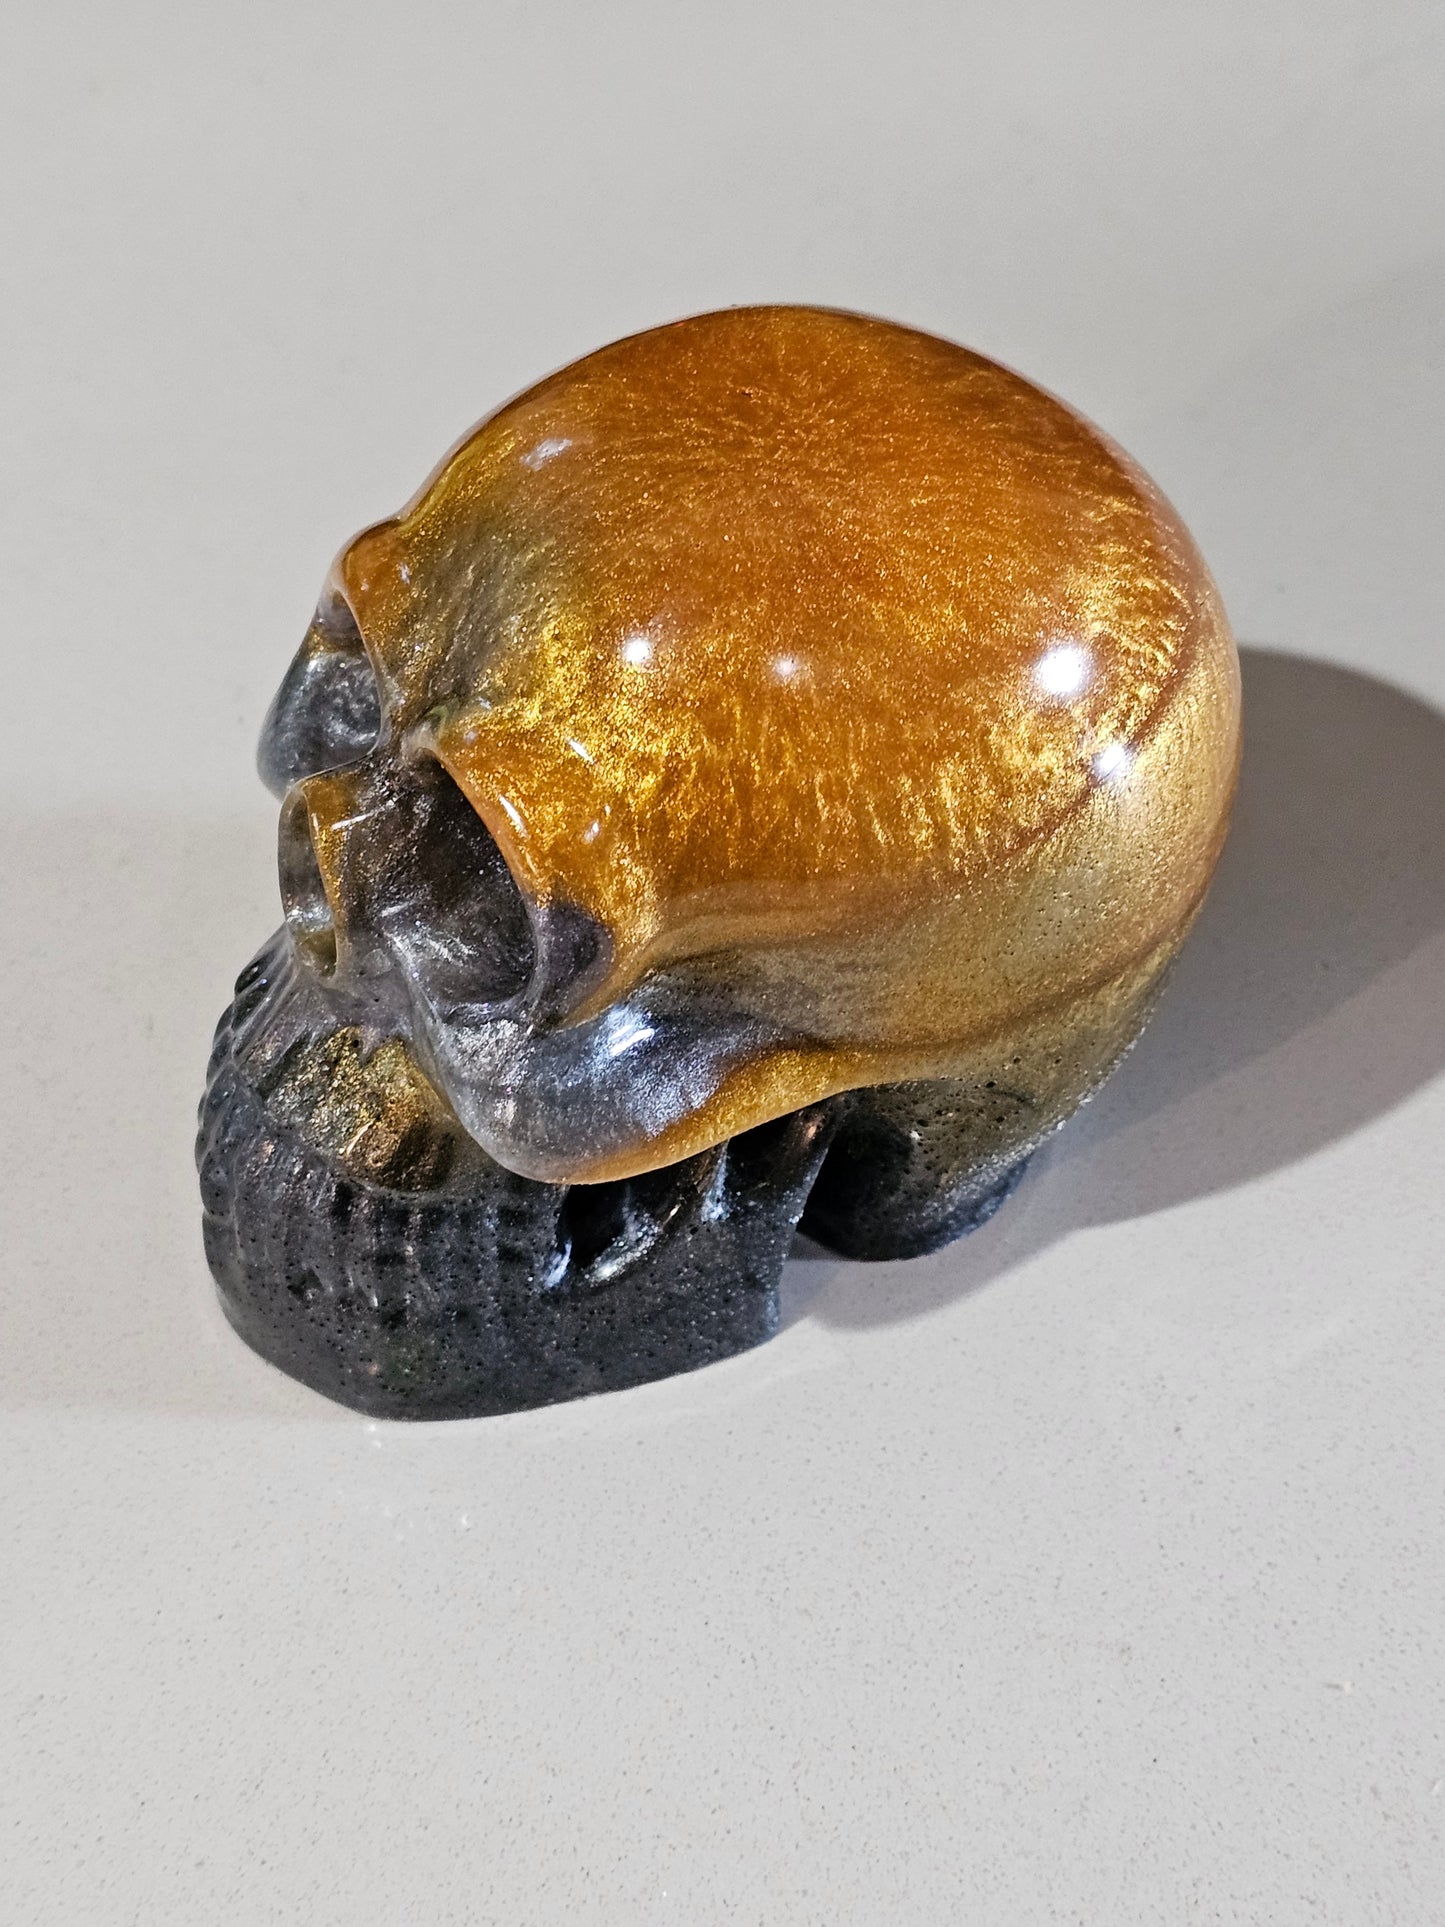 Skull - Gold/Silver